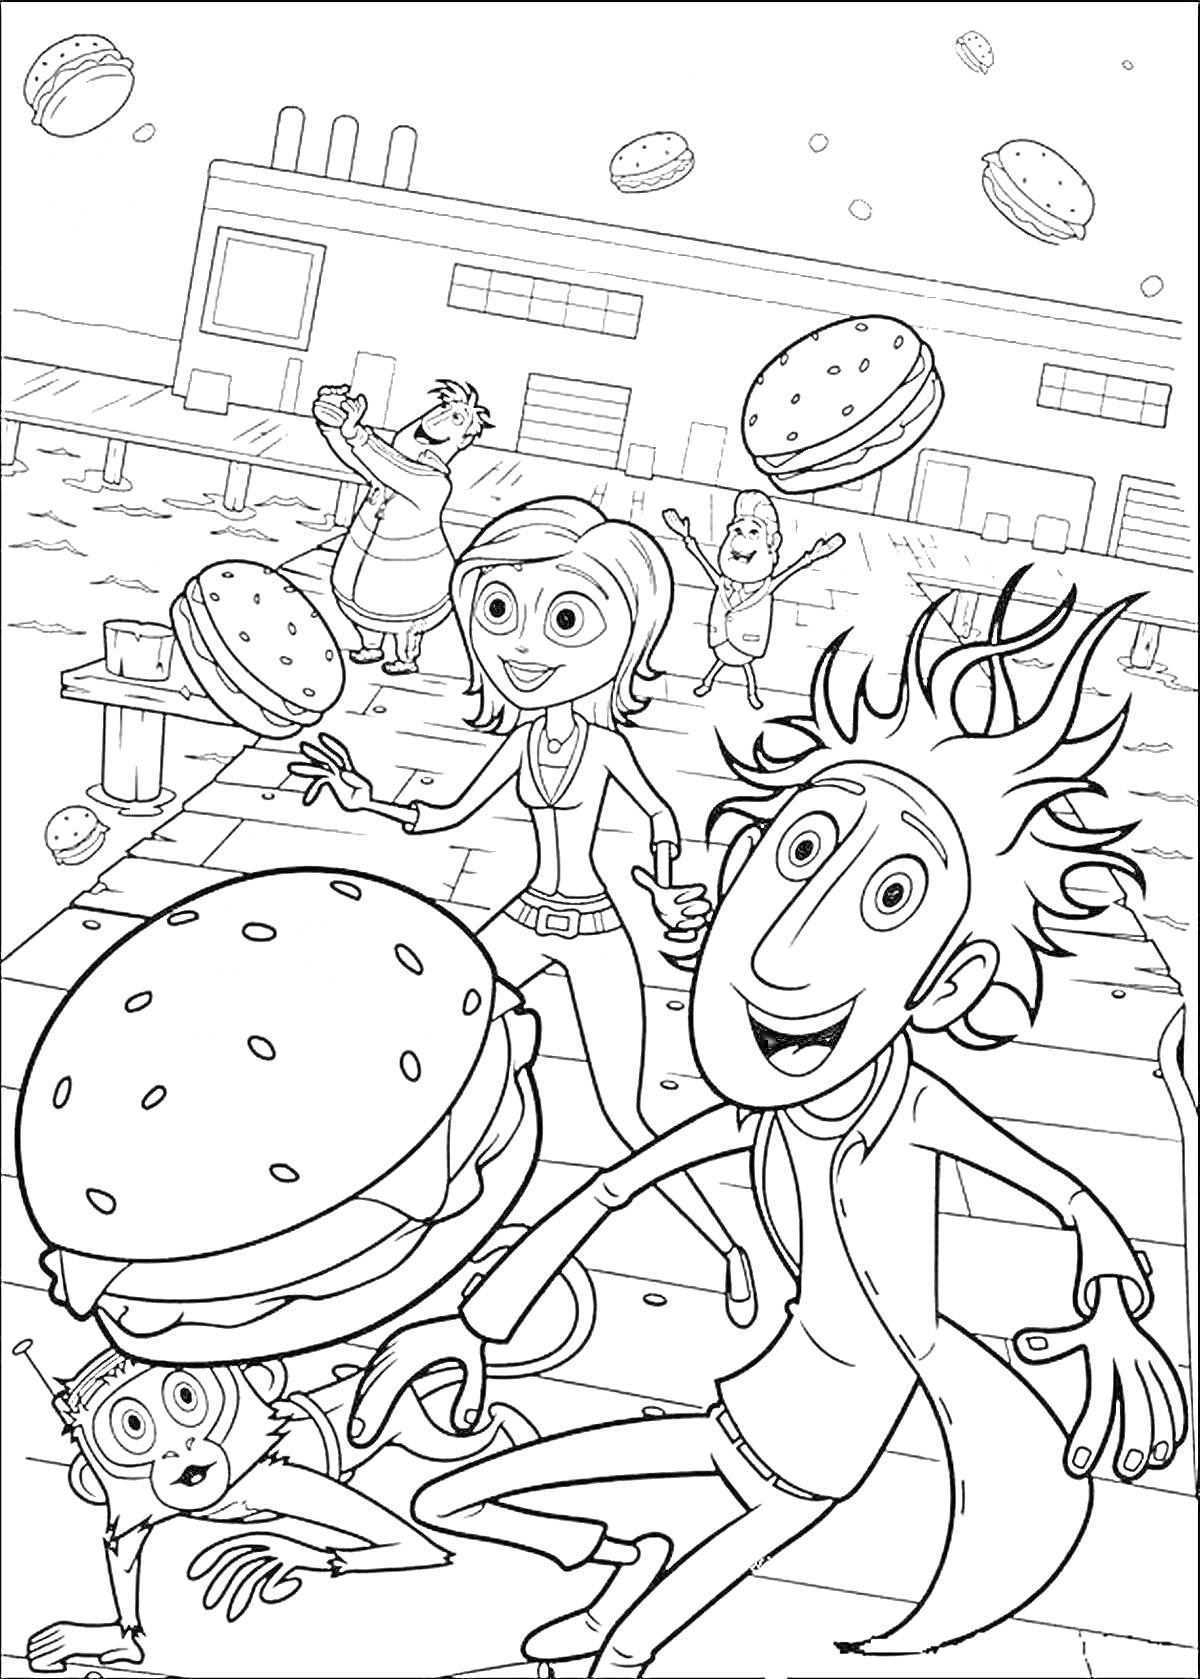 Главные герои мультфильма с большими гамбургерами, падающими с неба перед зданием